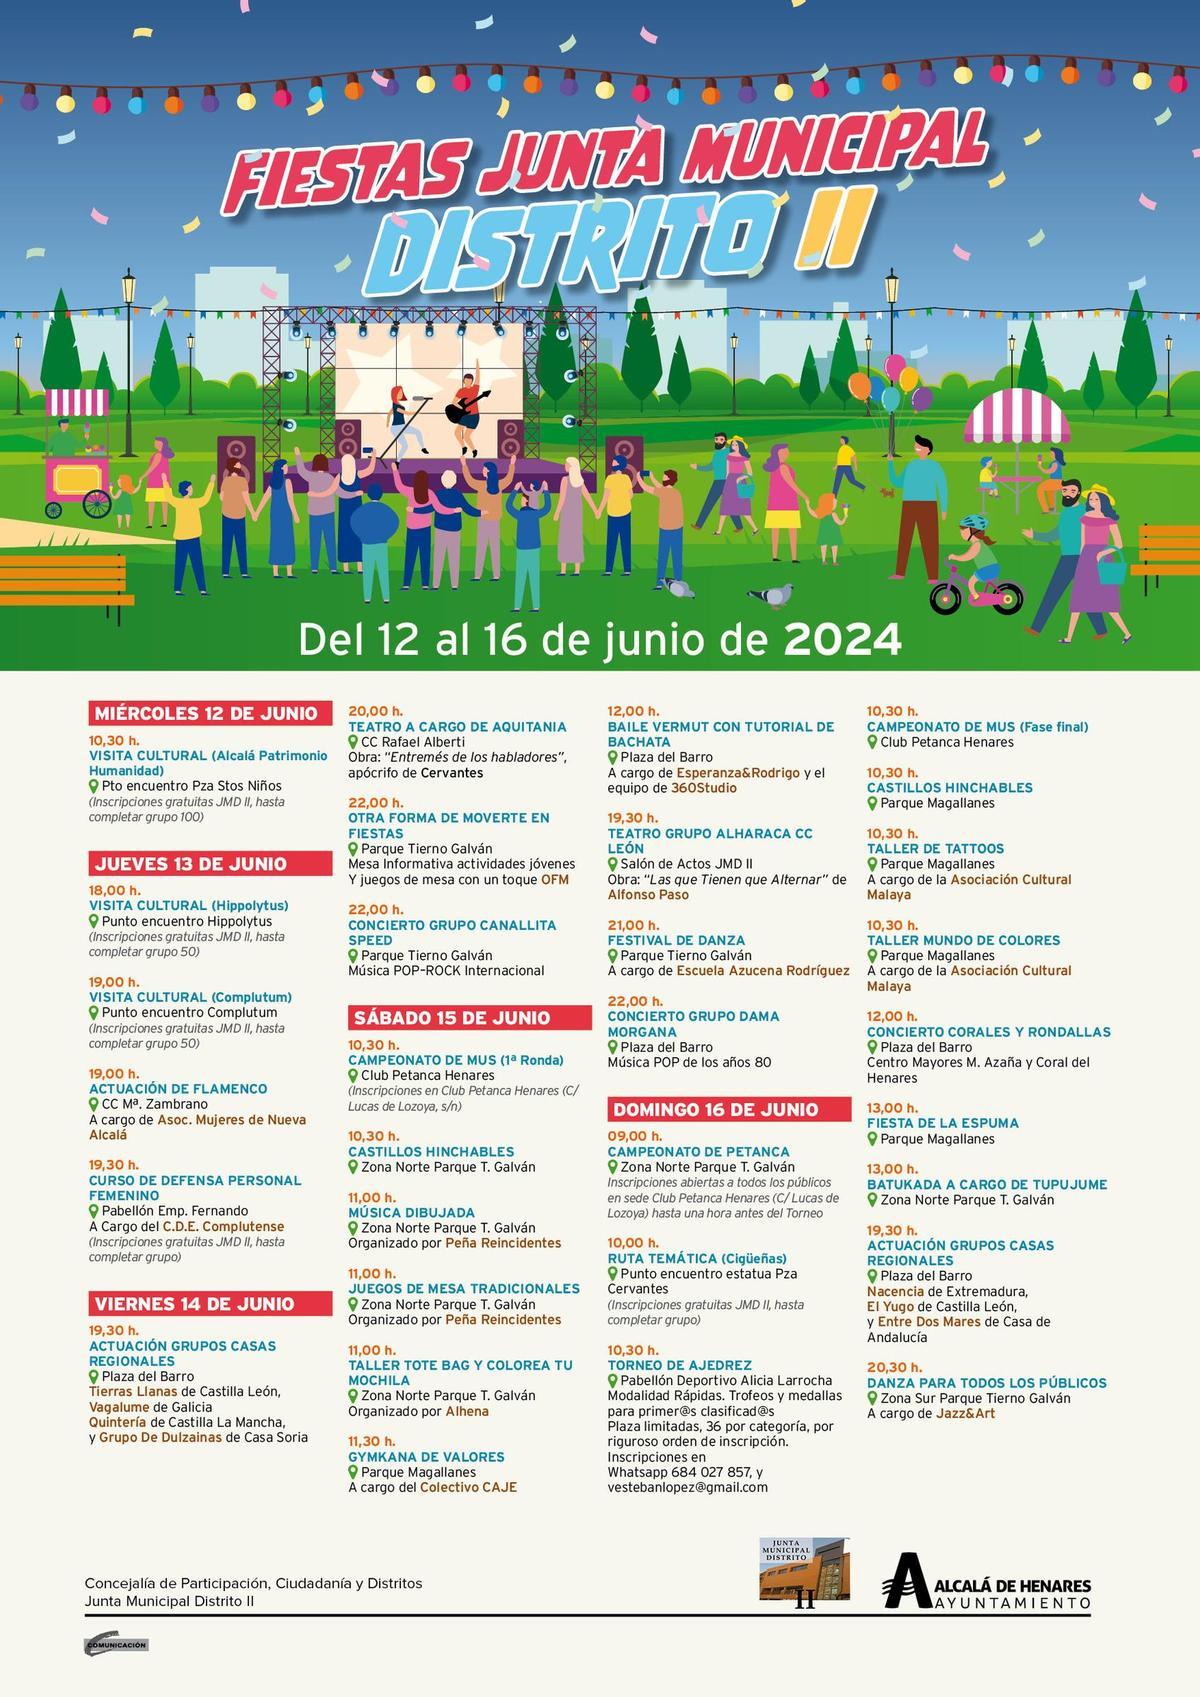 Porgramación Fiestas Distrito II de Alcalá de Henares en junio de 2024.